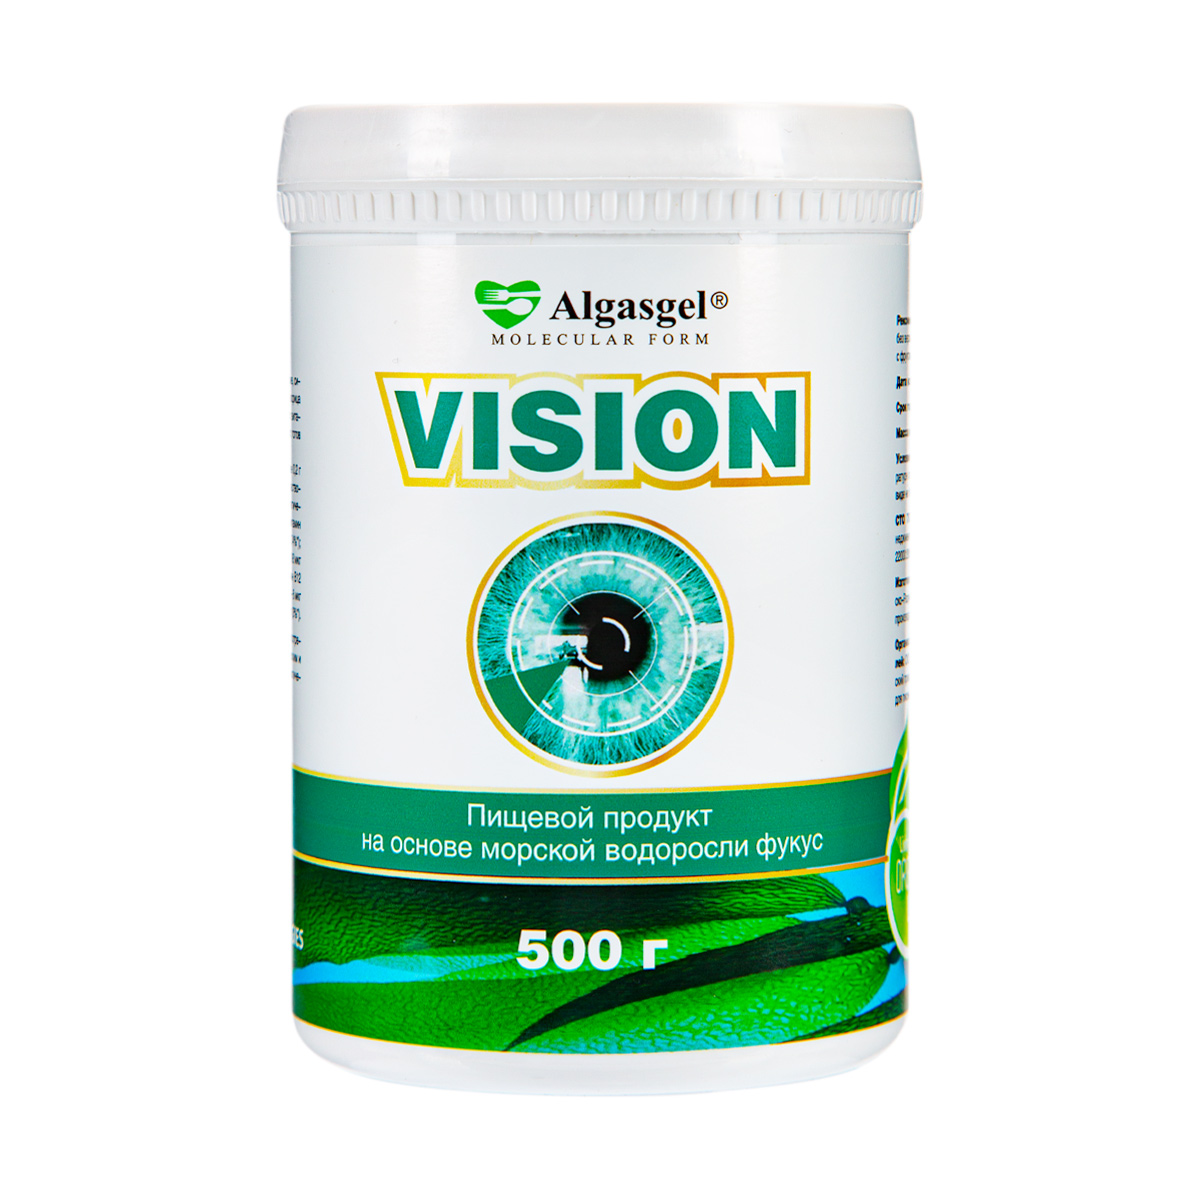 algasgel vision для здоровья глаз 2 уп по 500 г 1 в подарок Algasgel Vision для здоровья глаз (500 г)